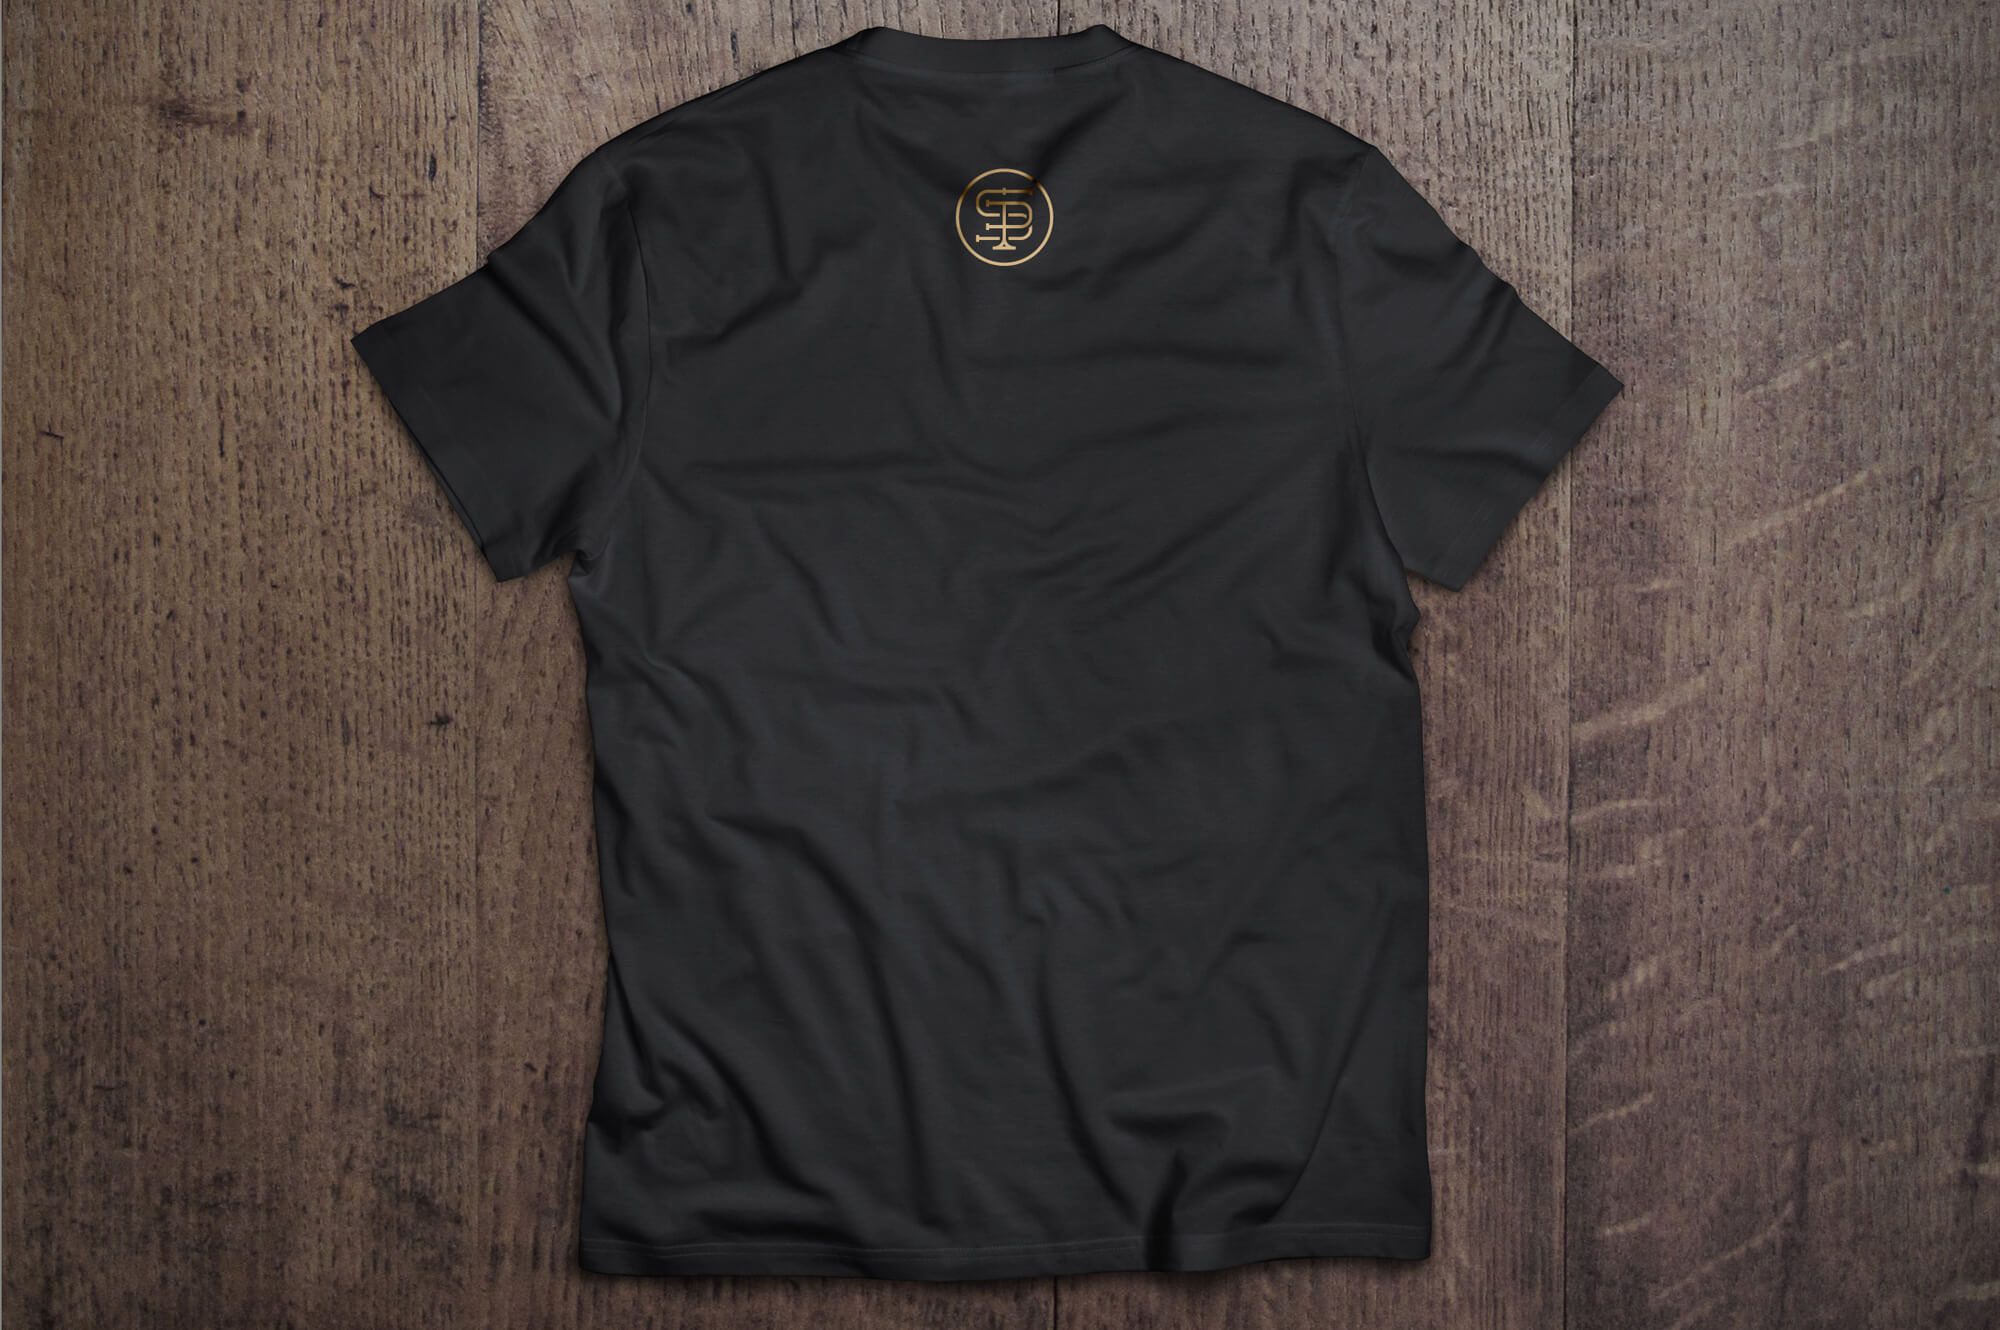 Stara Przepompownia - Urodziny t-shirt BLACK tył